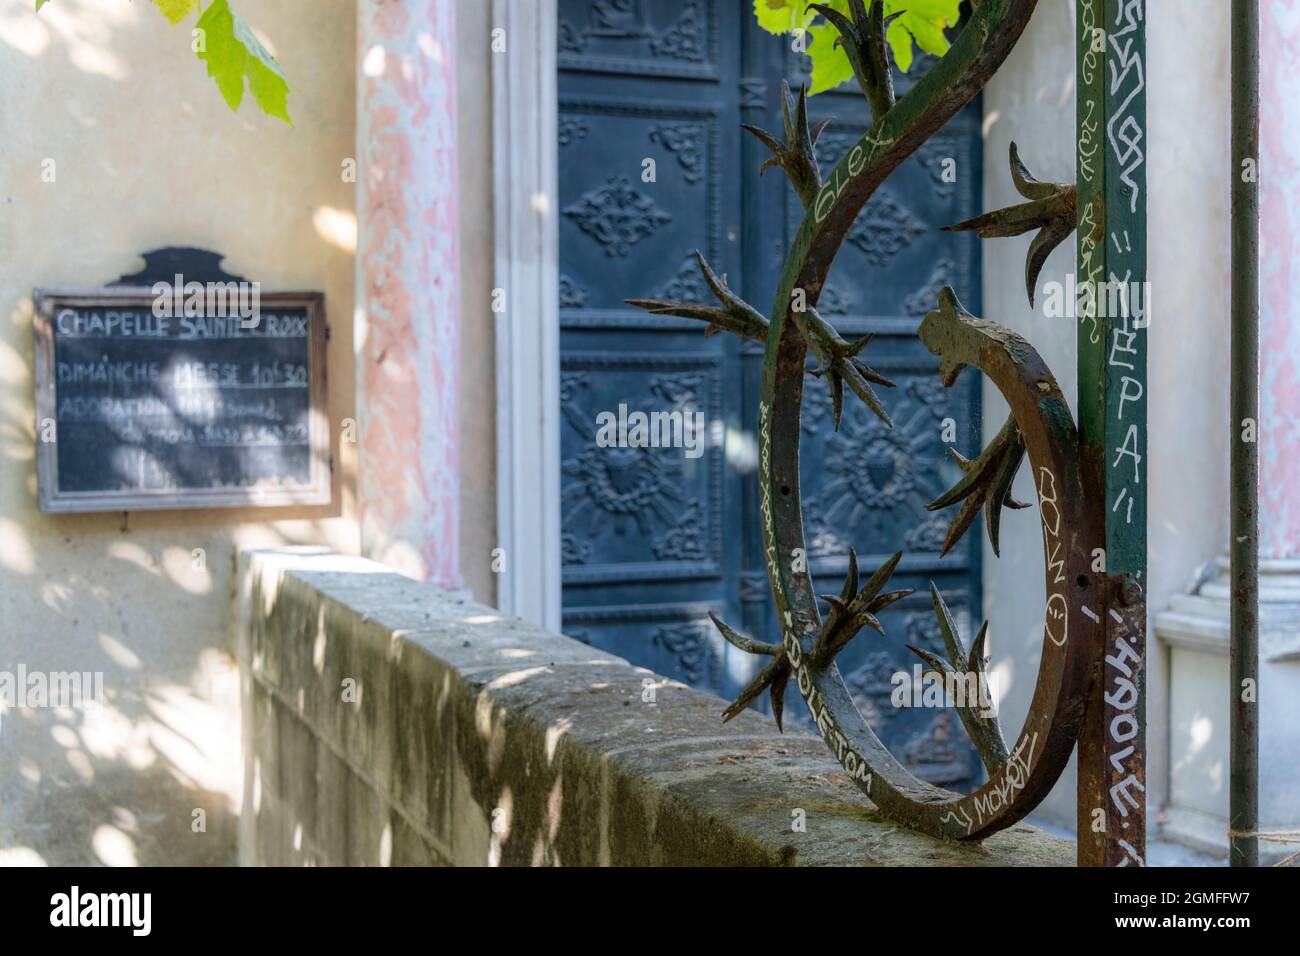 The Entrance of Chapelle Sainte Croix, Rue des Teinturiers Avignon, France. Stock Photo